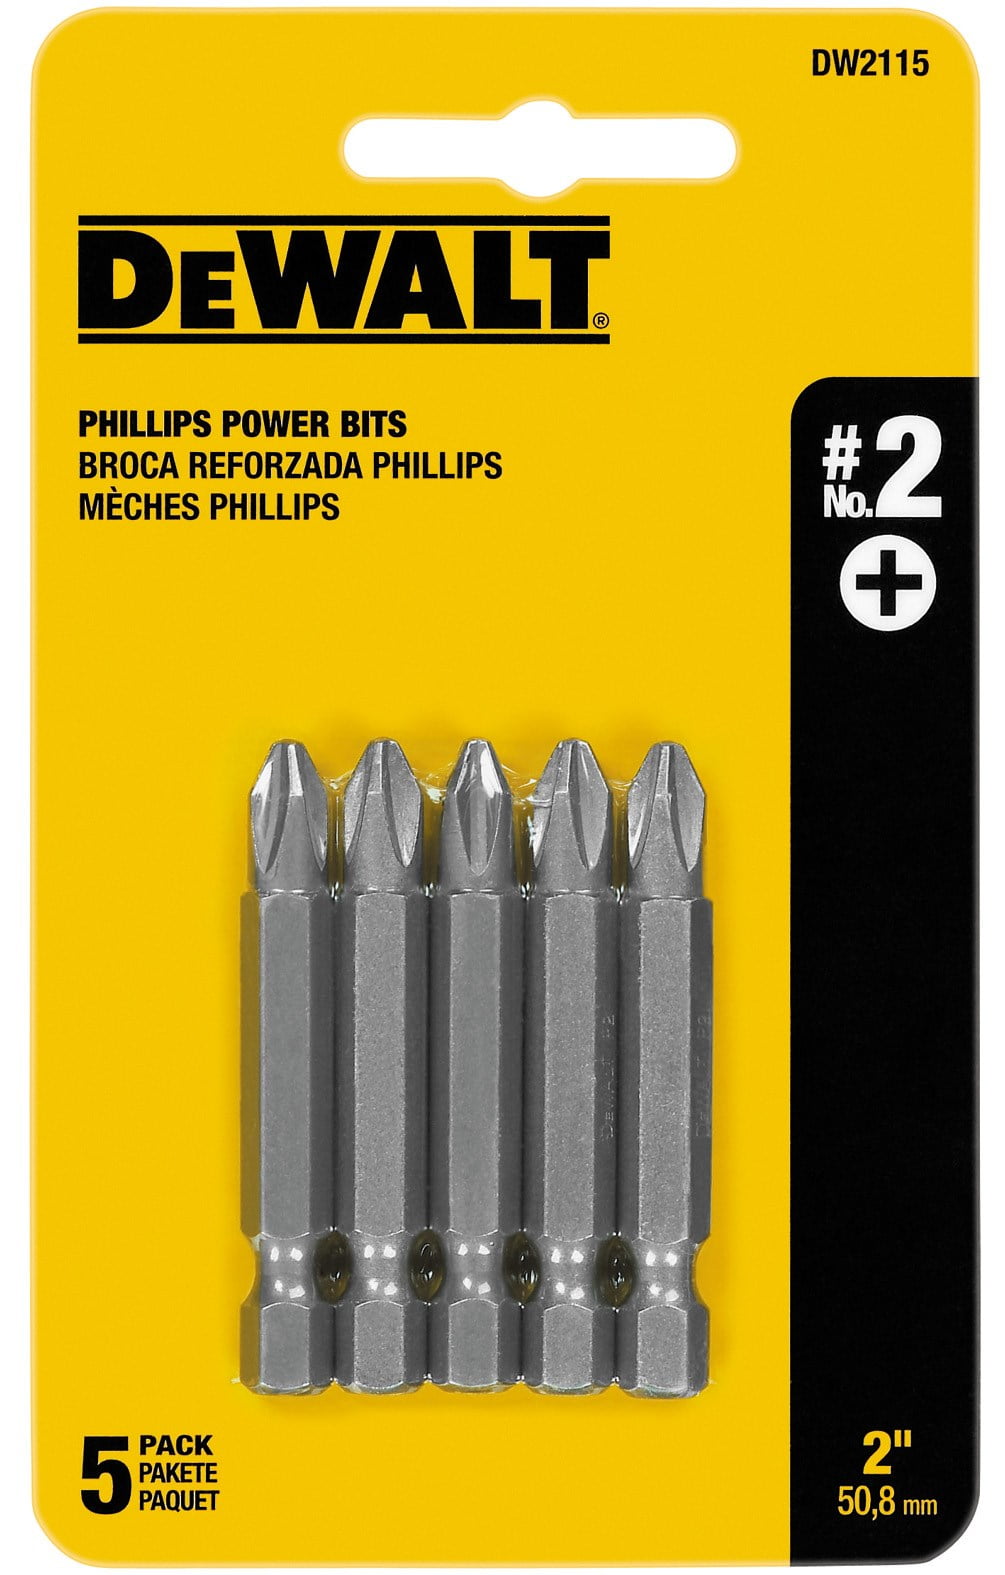 DEWALT Power Tough Grip PH2 Phillips High-Speed Steel Hex Shank Screwdriver 10pc 